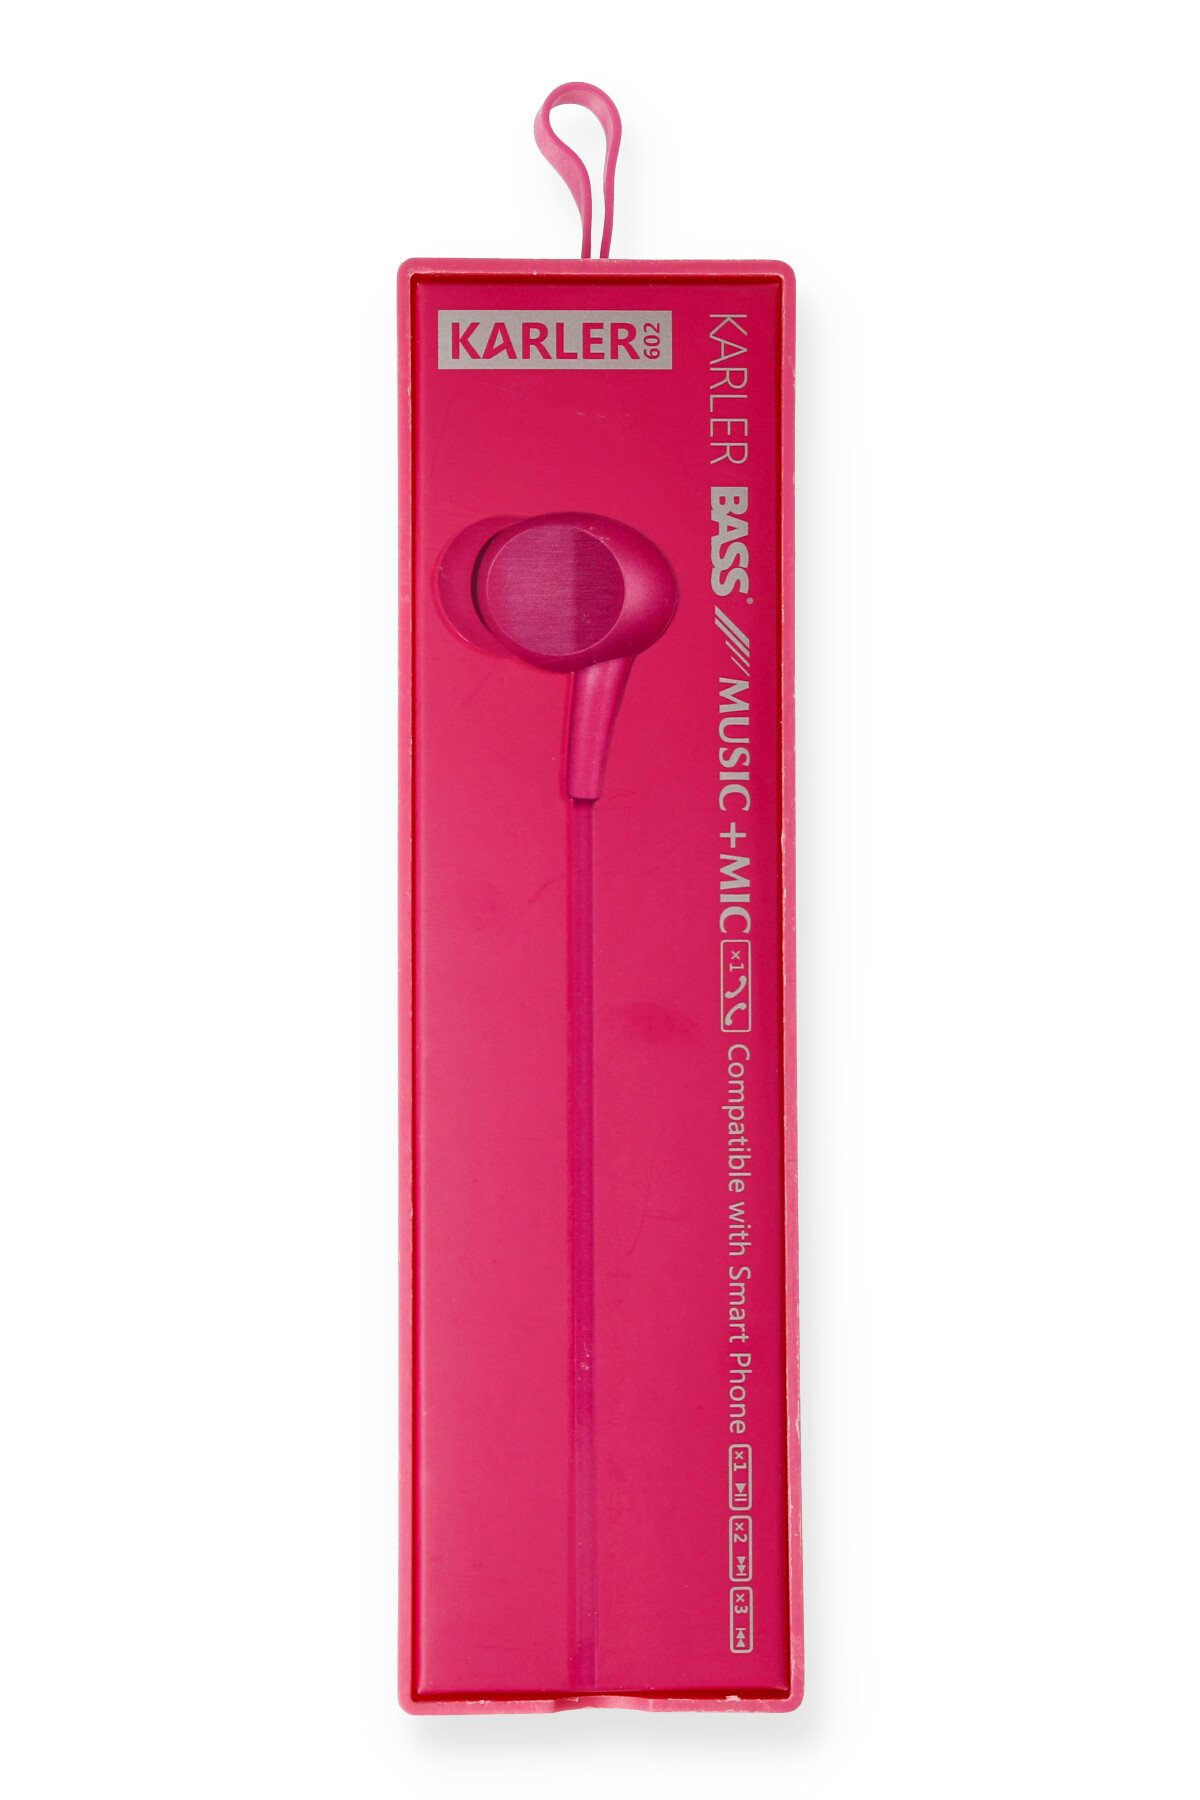 Karler Bass KR-207 Mıknatıslı Kablolu Kulaklık - Kırmızı